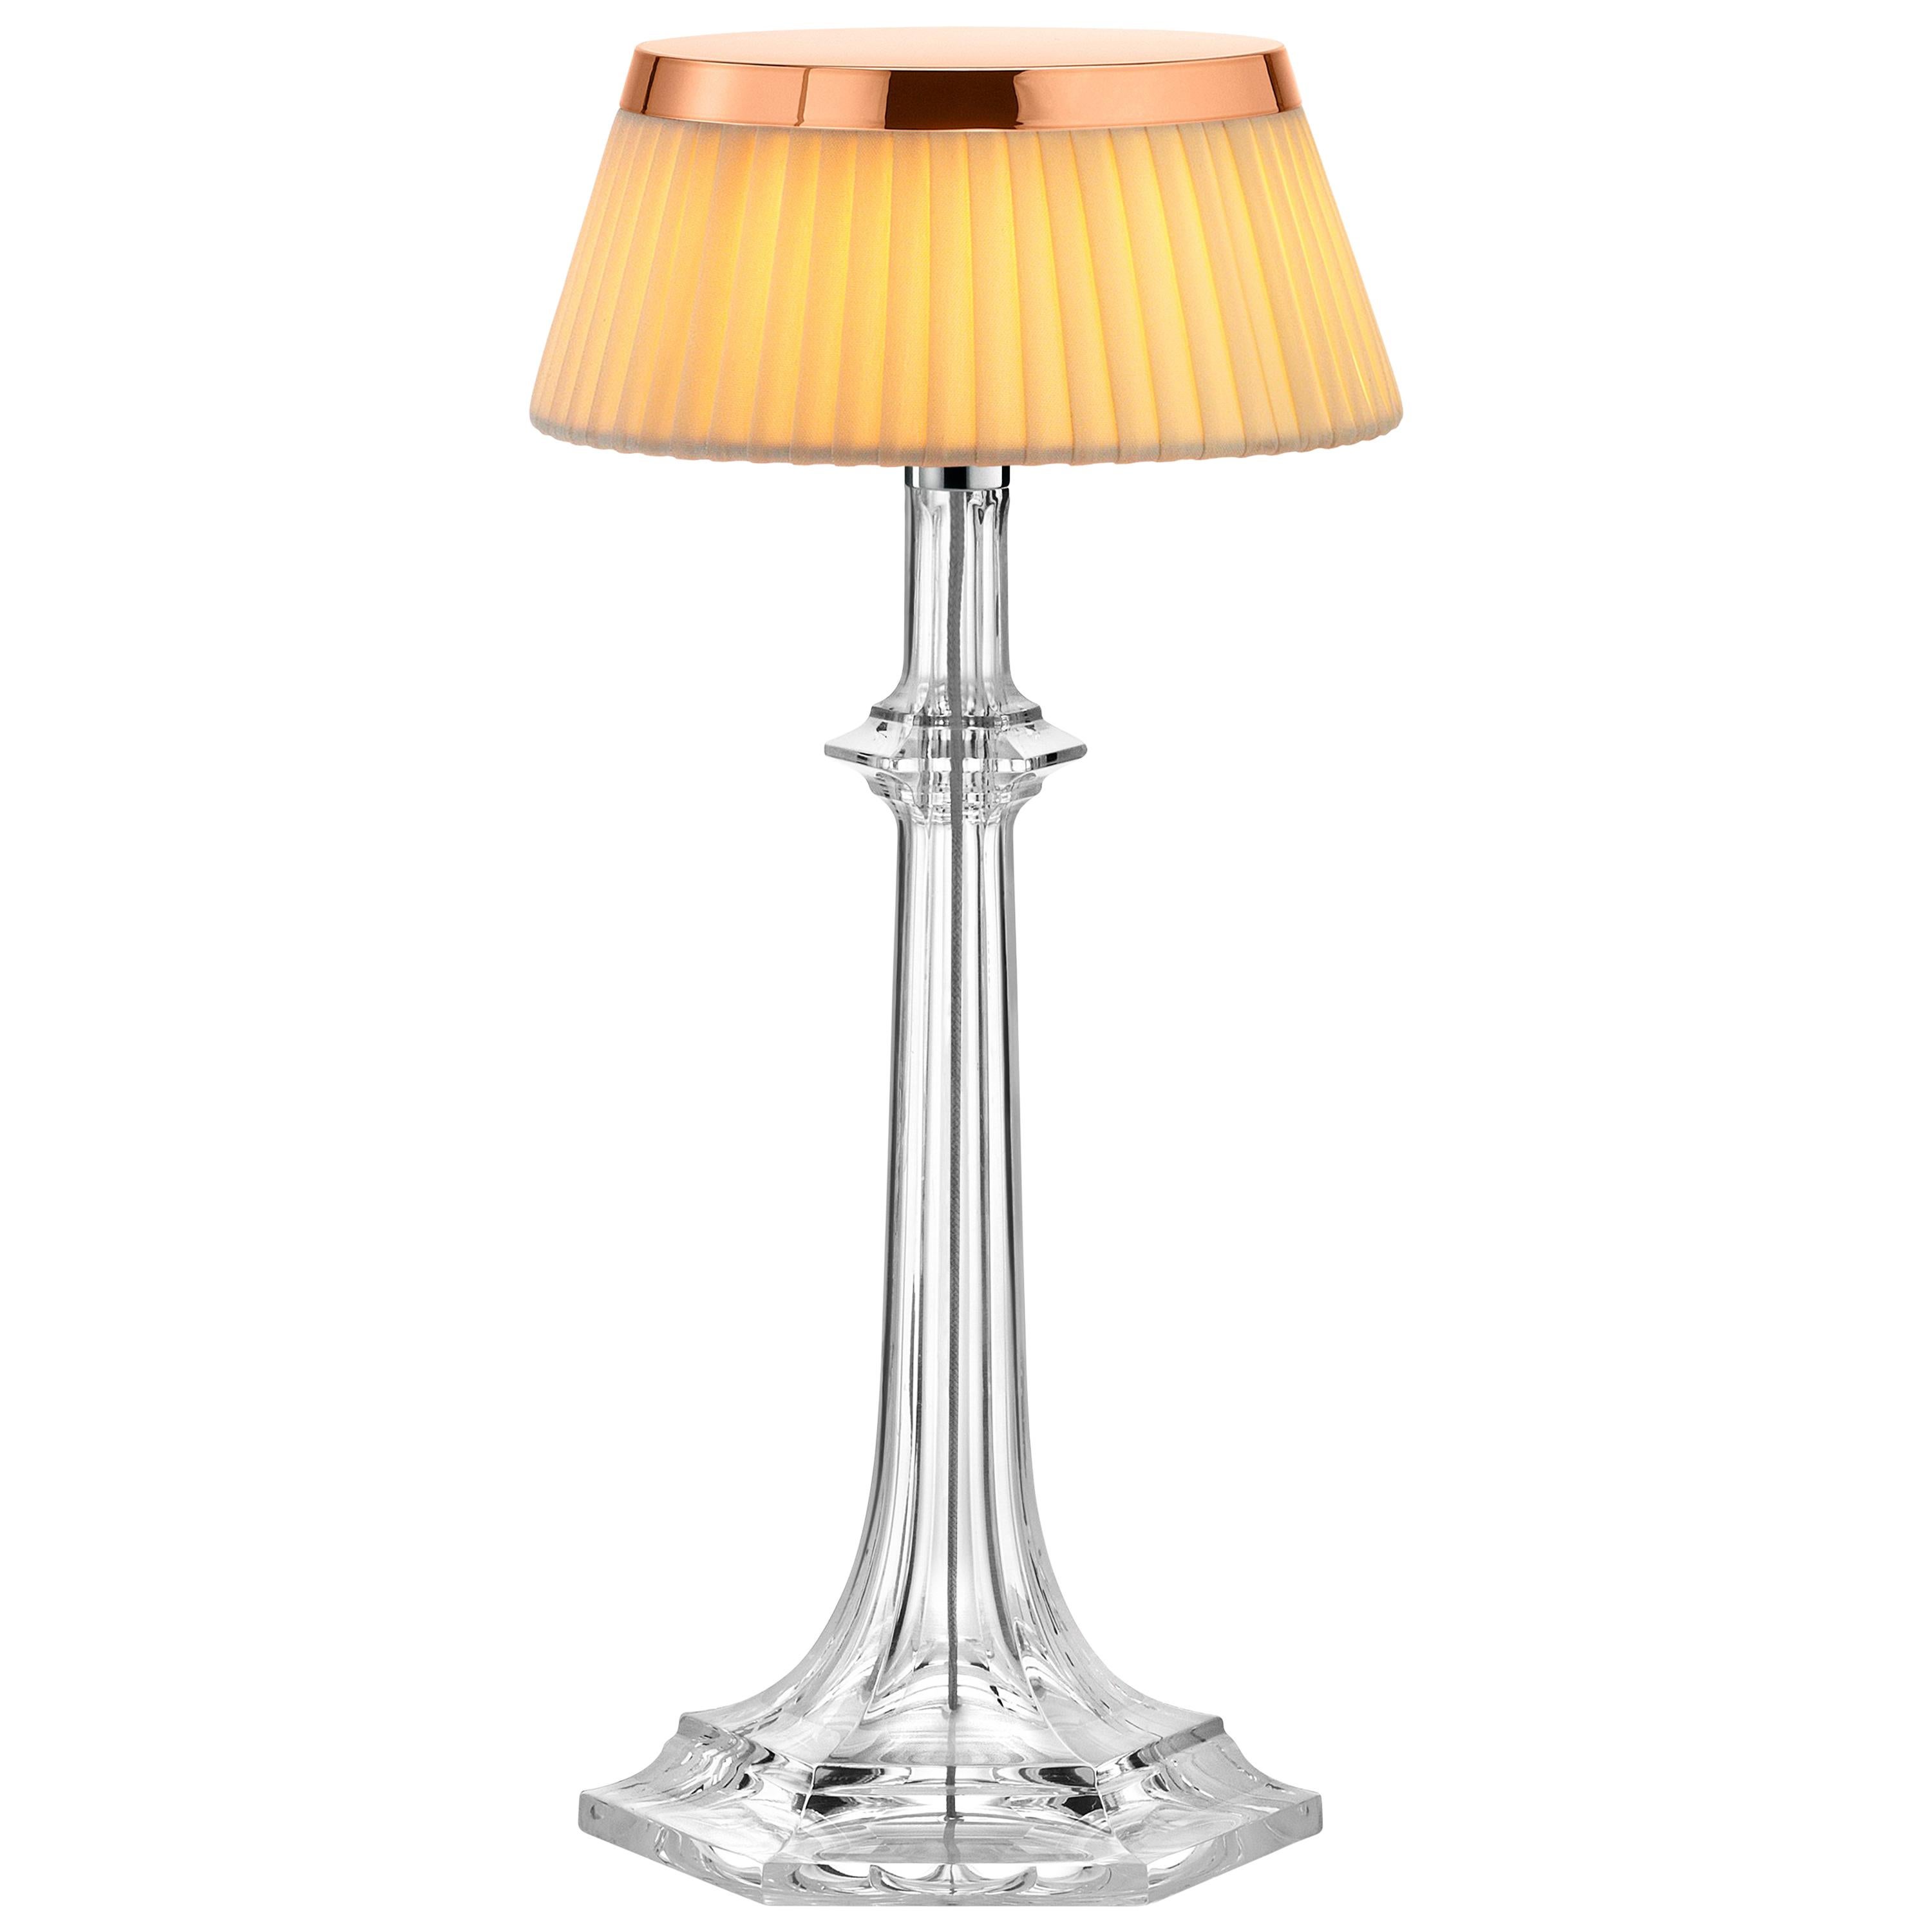 Petite lampe chromée Bon Jour Versailles FLOS avec couronne Avo douce de Philippe Starck